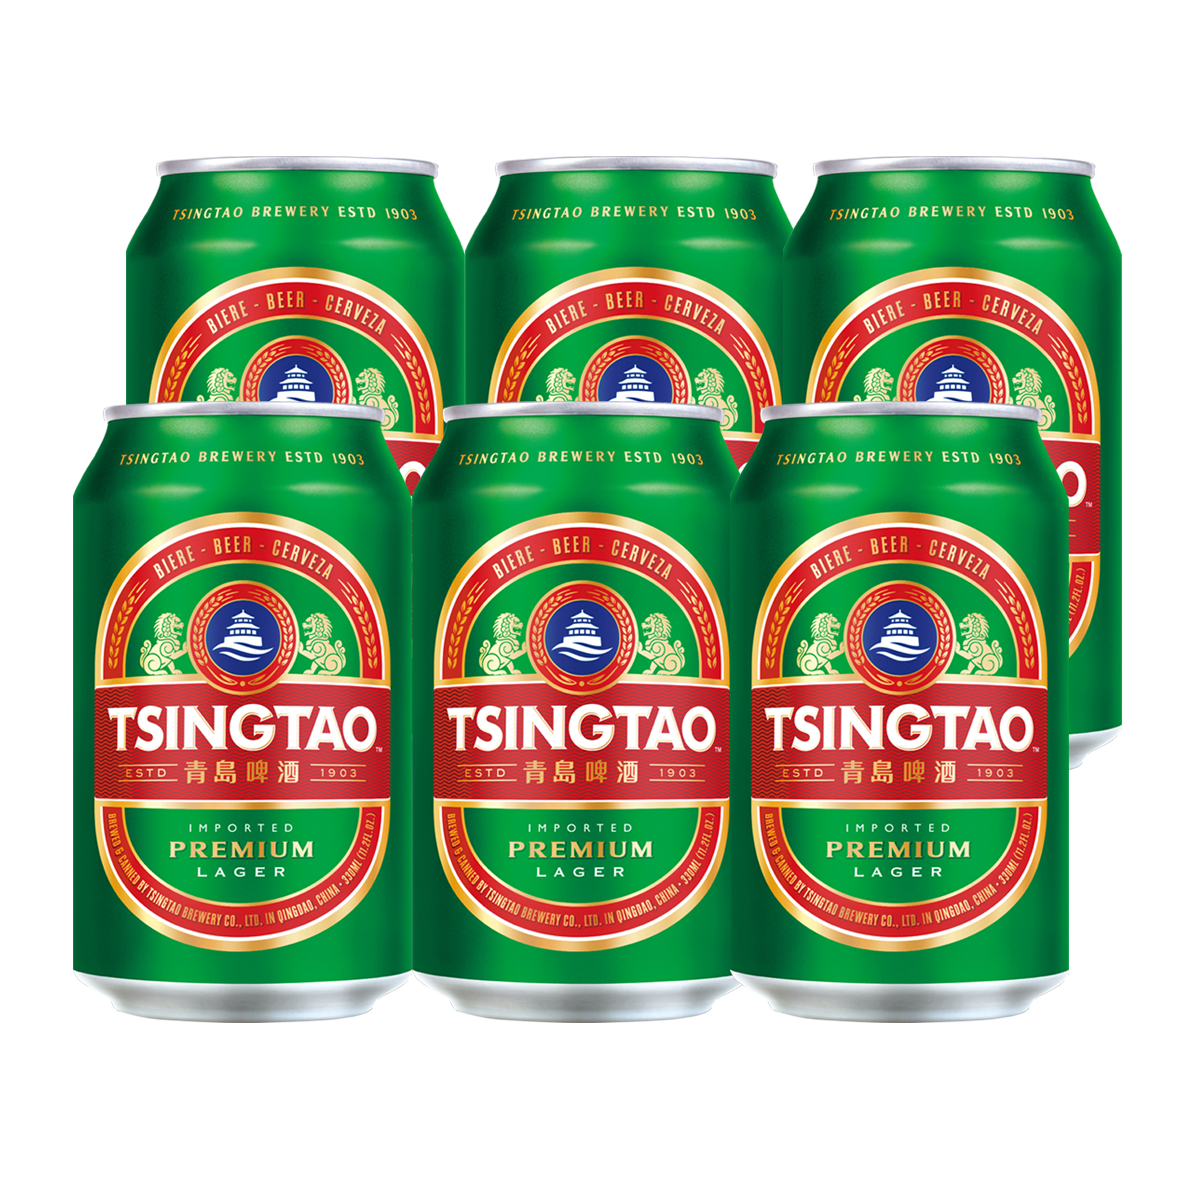 [TẶNG MỒI BÉN] Lốc 6 lon Bia Tsingtao Classic Lager - Độ cồn 5.0% - Bia Thanh Đảo Nhập khẩu...